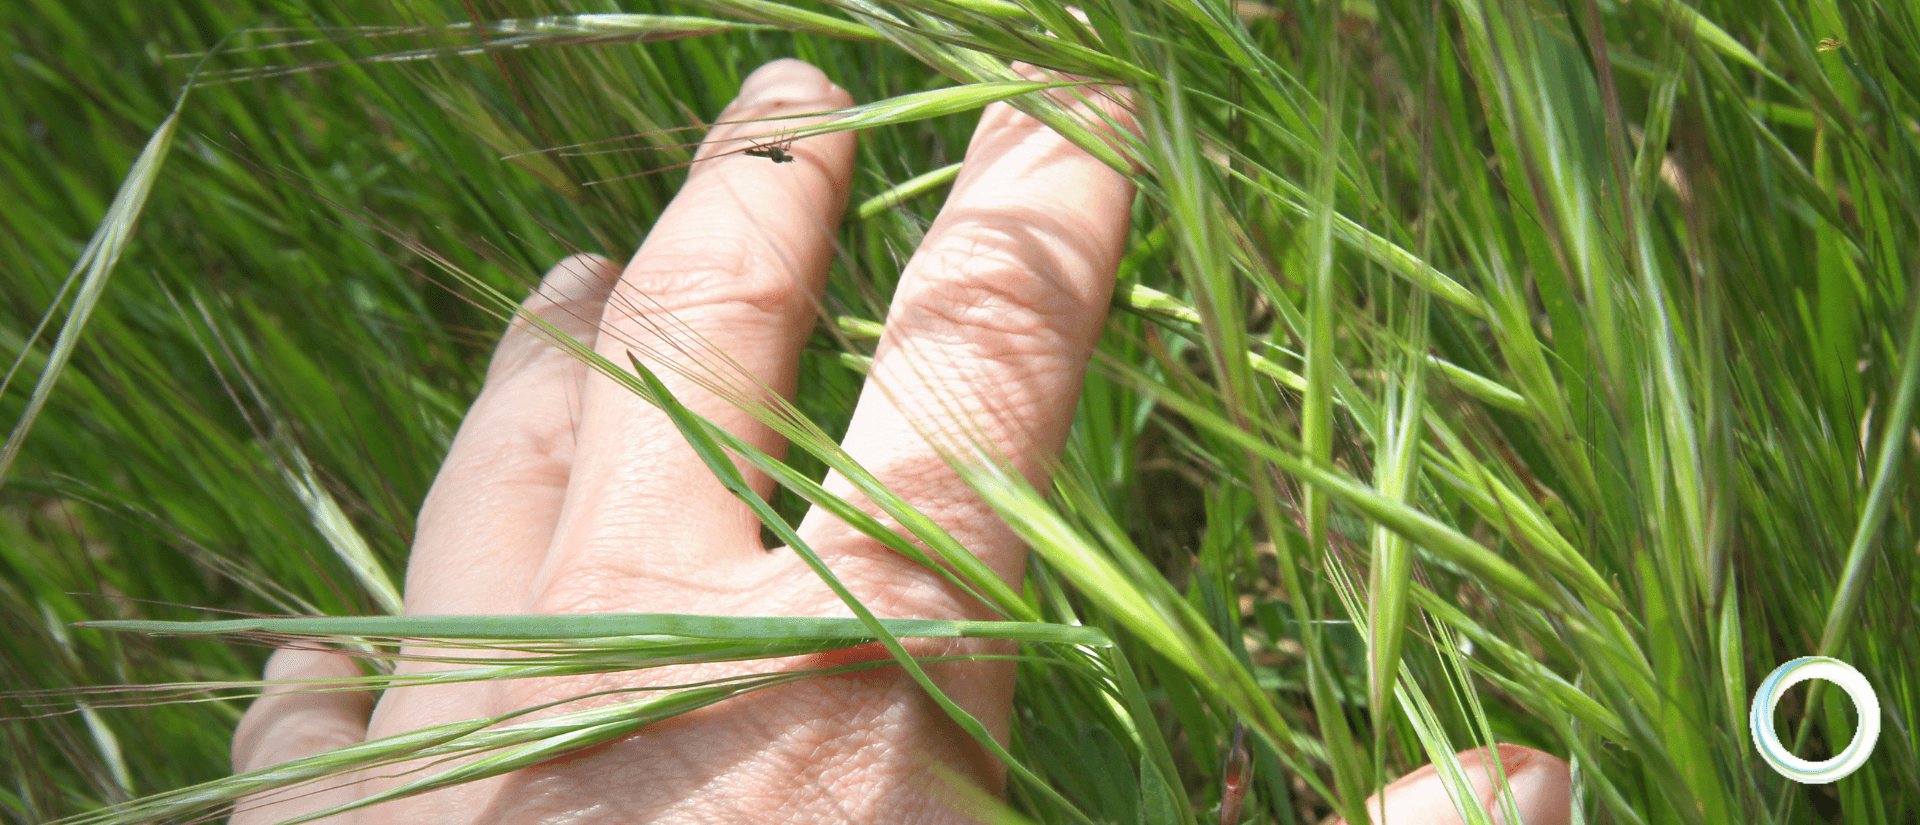 hand running fingers through grass